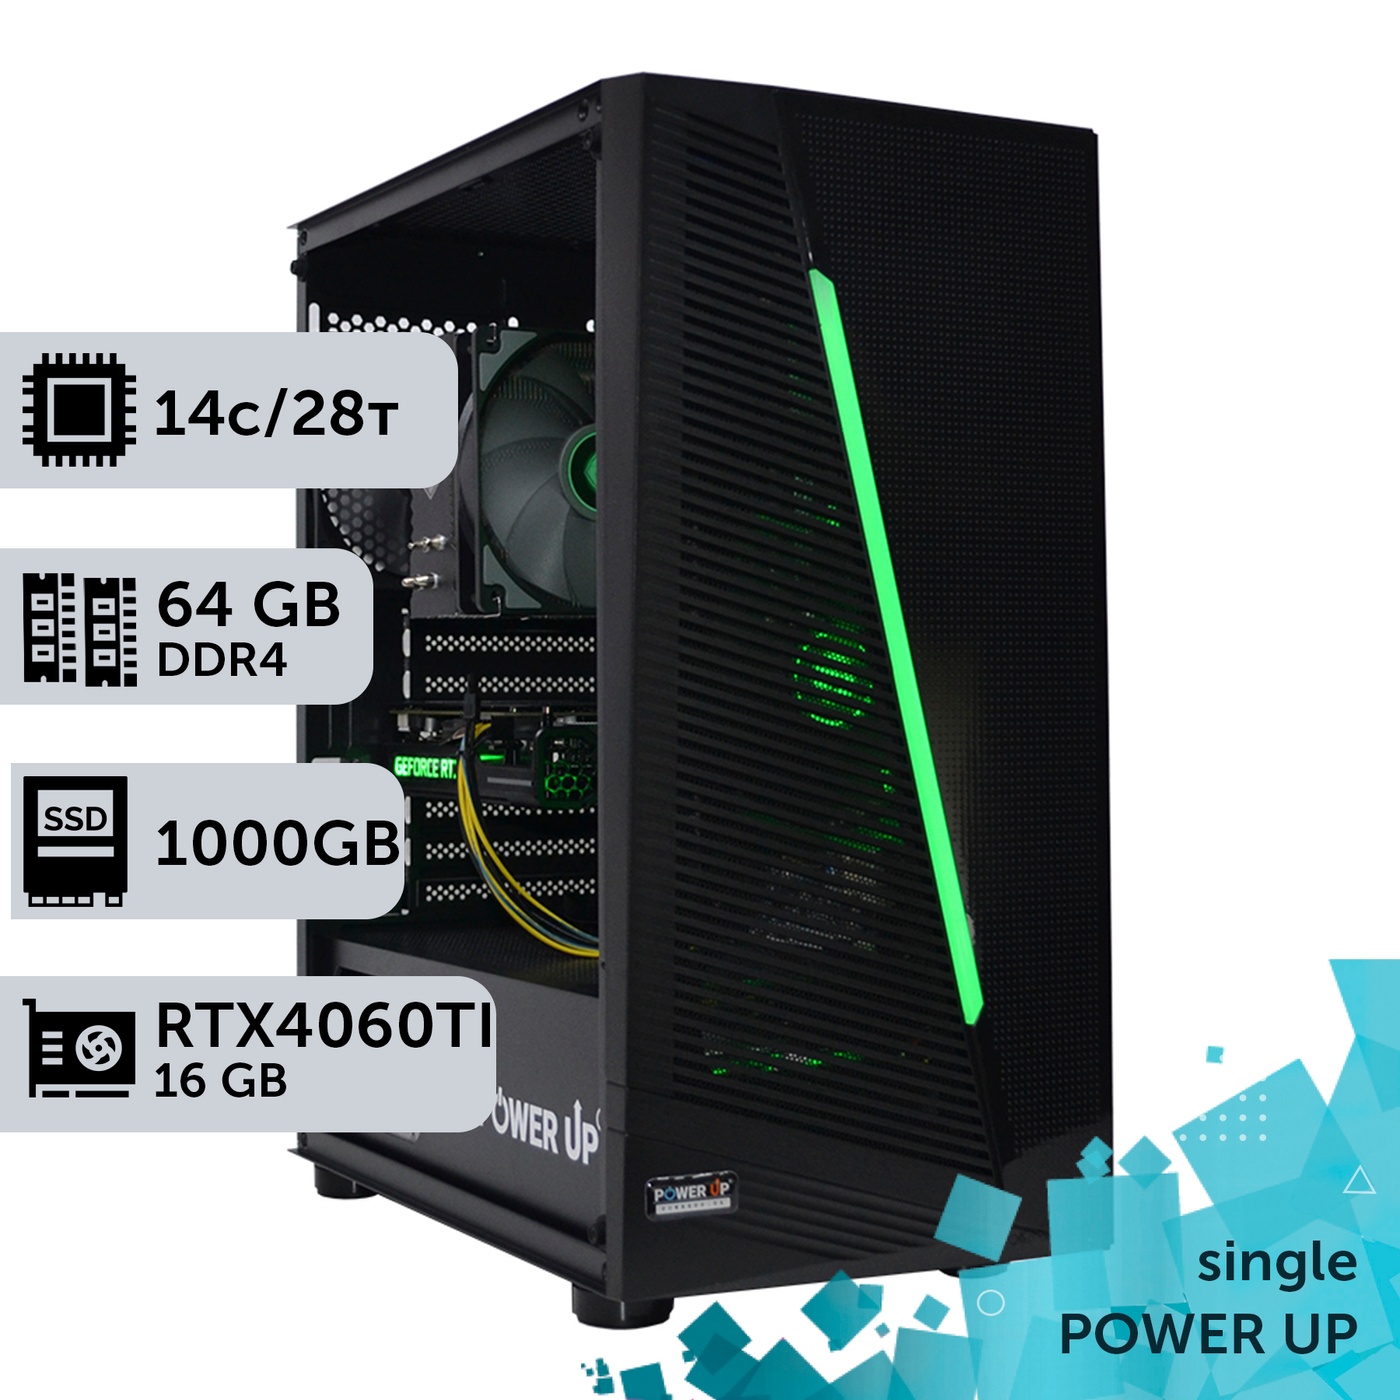 Робоча станція PowerUp #275 Xeon E5 2680 v4/64 GB/SSD 1TB/GeForce RTX 4060Ti 16GB